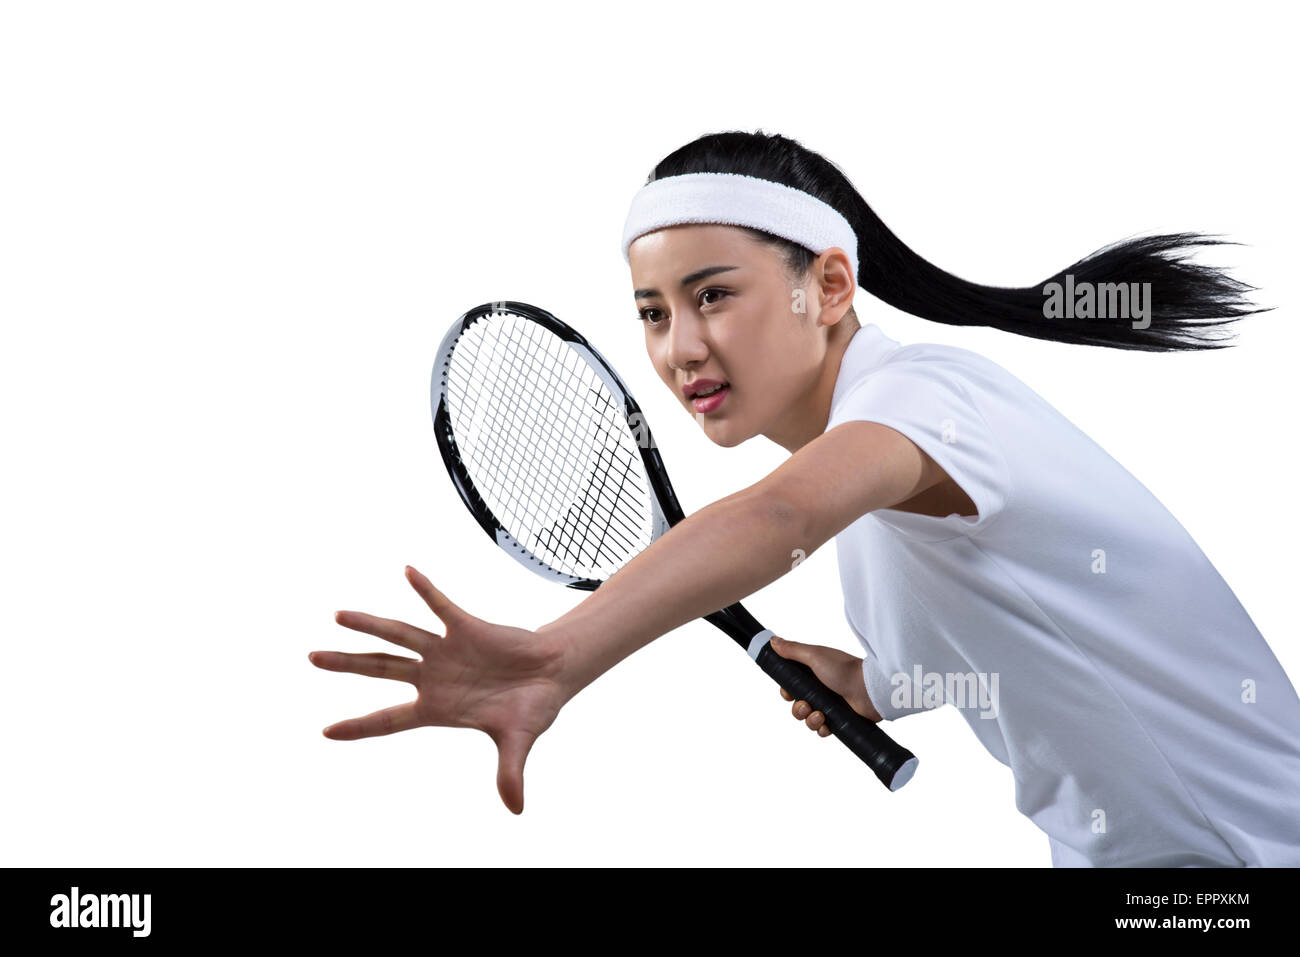 Tennis player prêt à frapper ball, portrait Banque D'Images